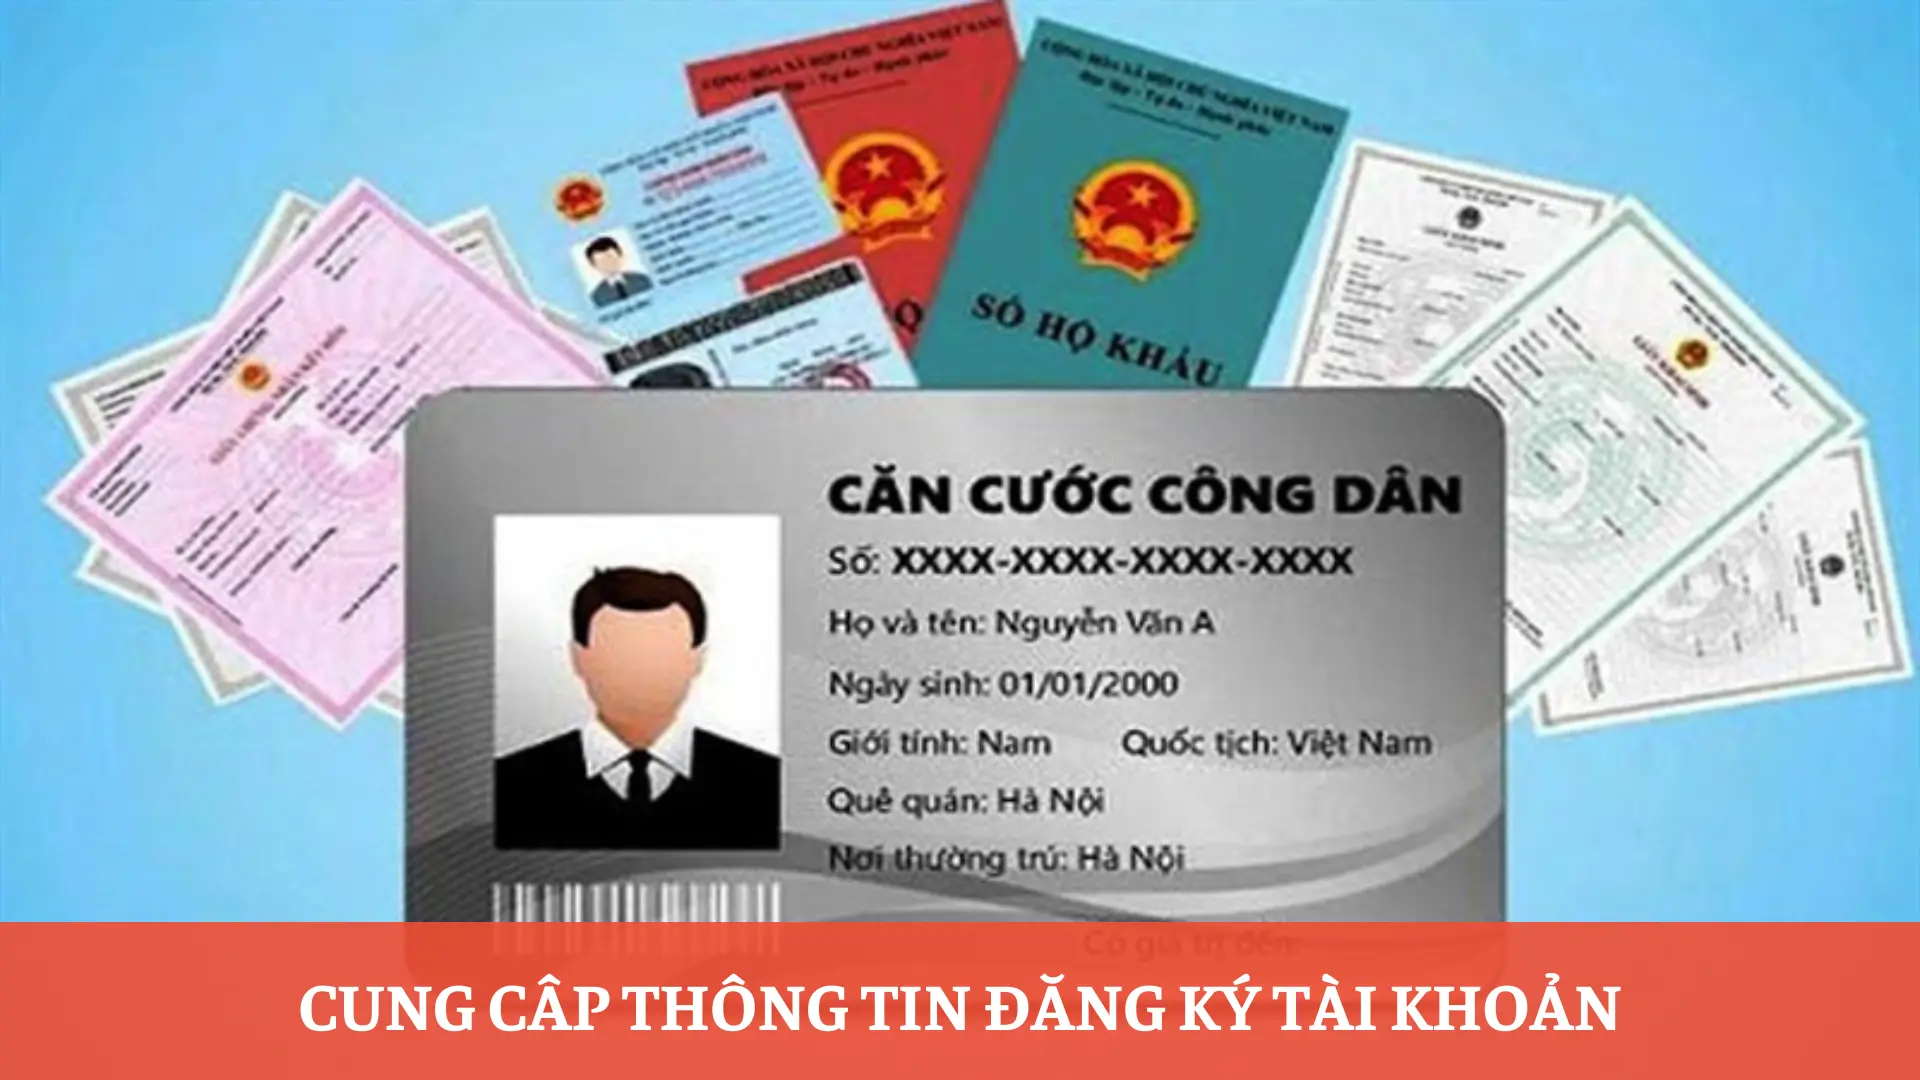 Cap-nhat-thong-tin-dang-ky-sv88